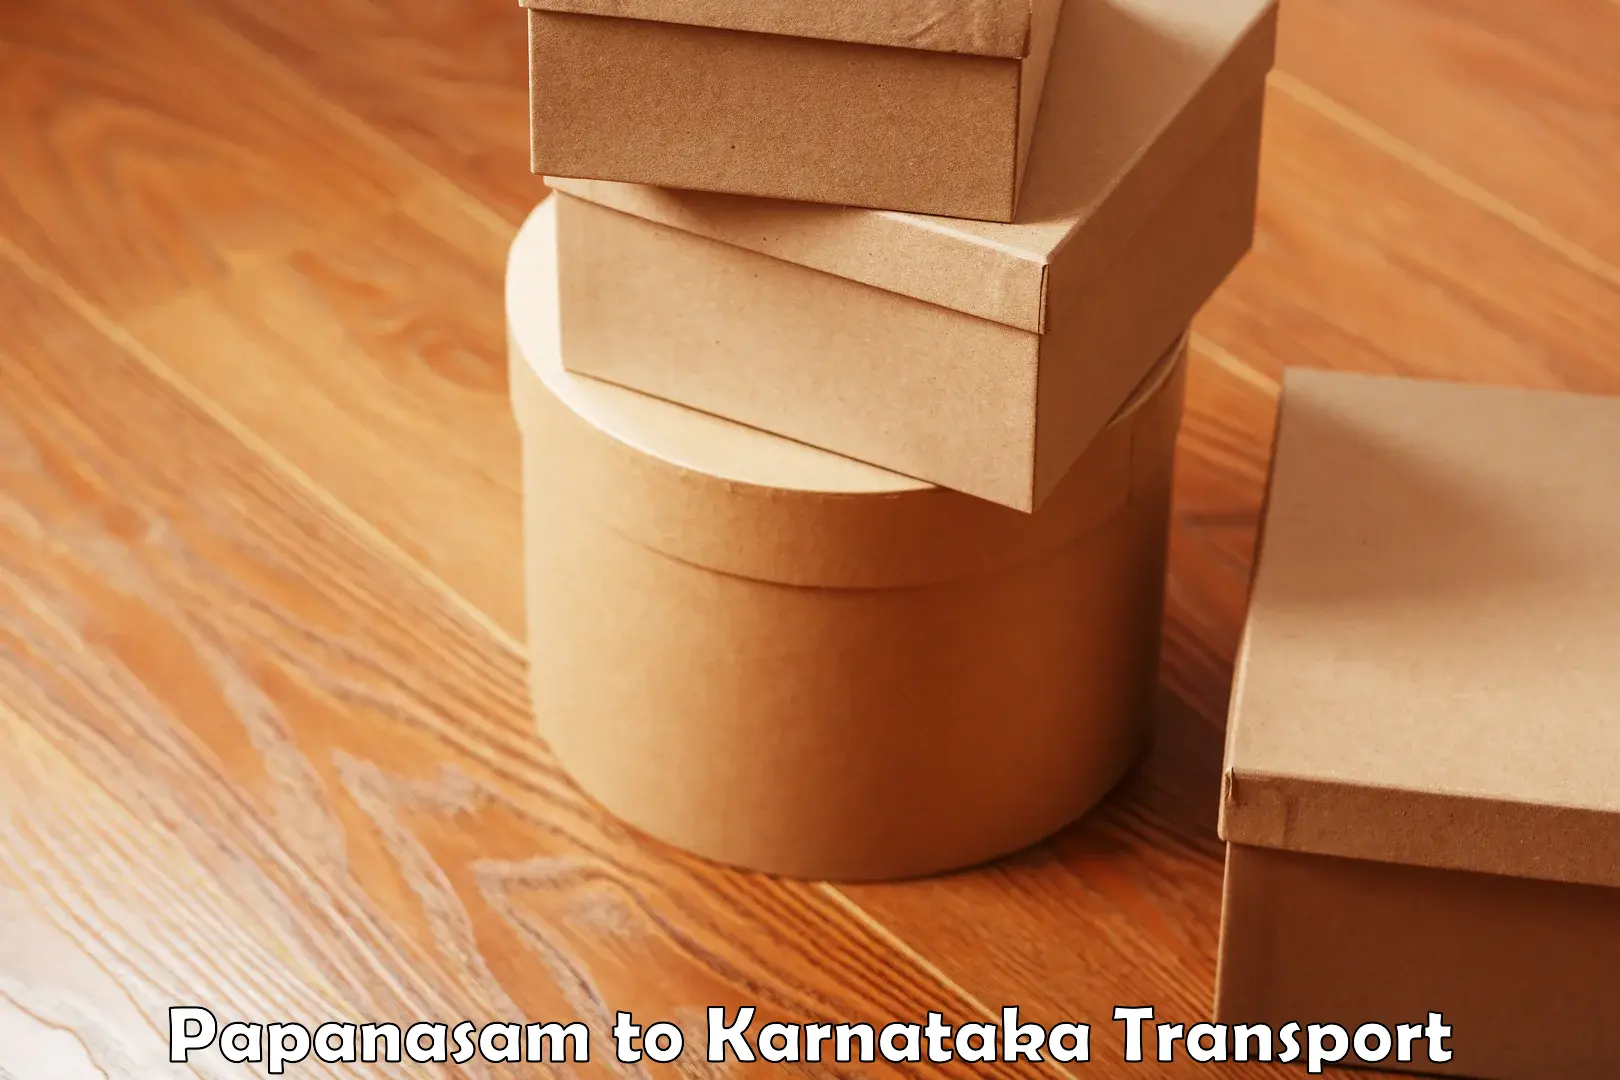 Commercial transport service Papanasam to Krishnarajanagara